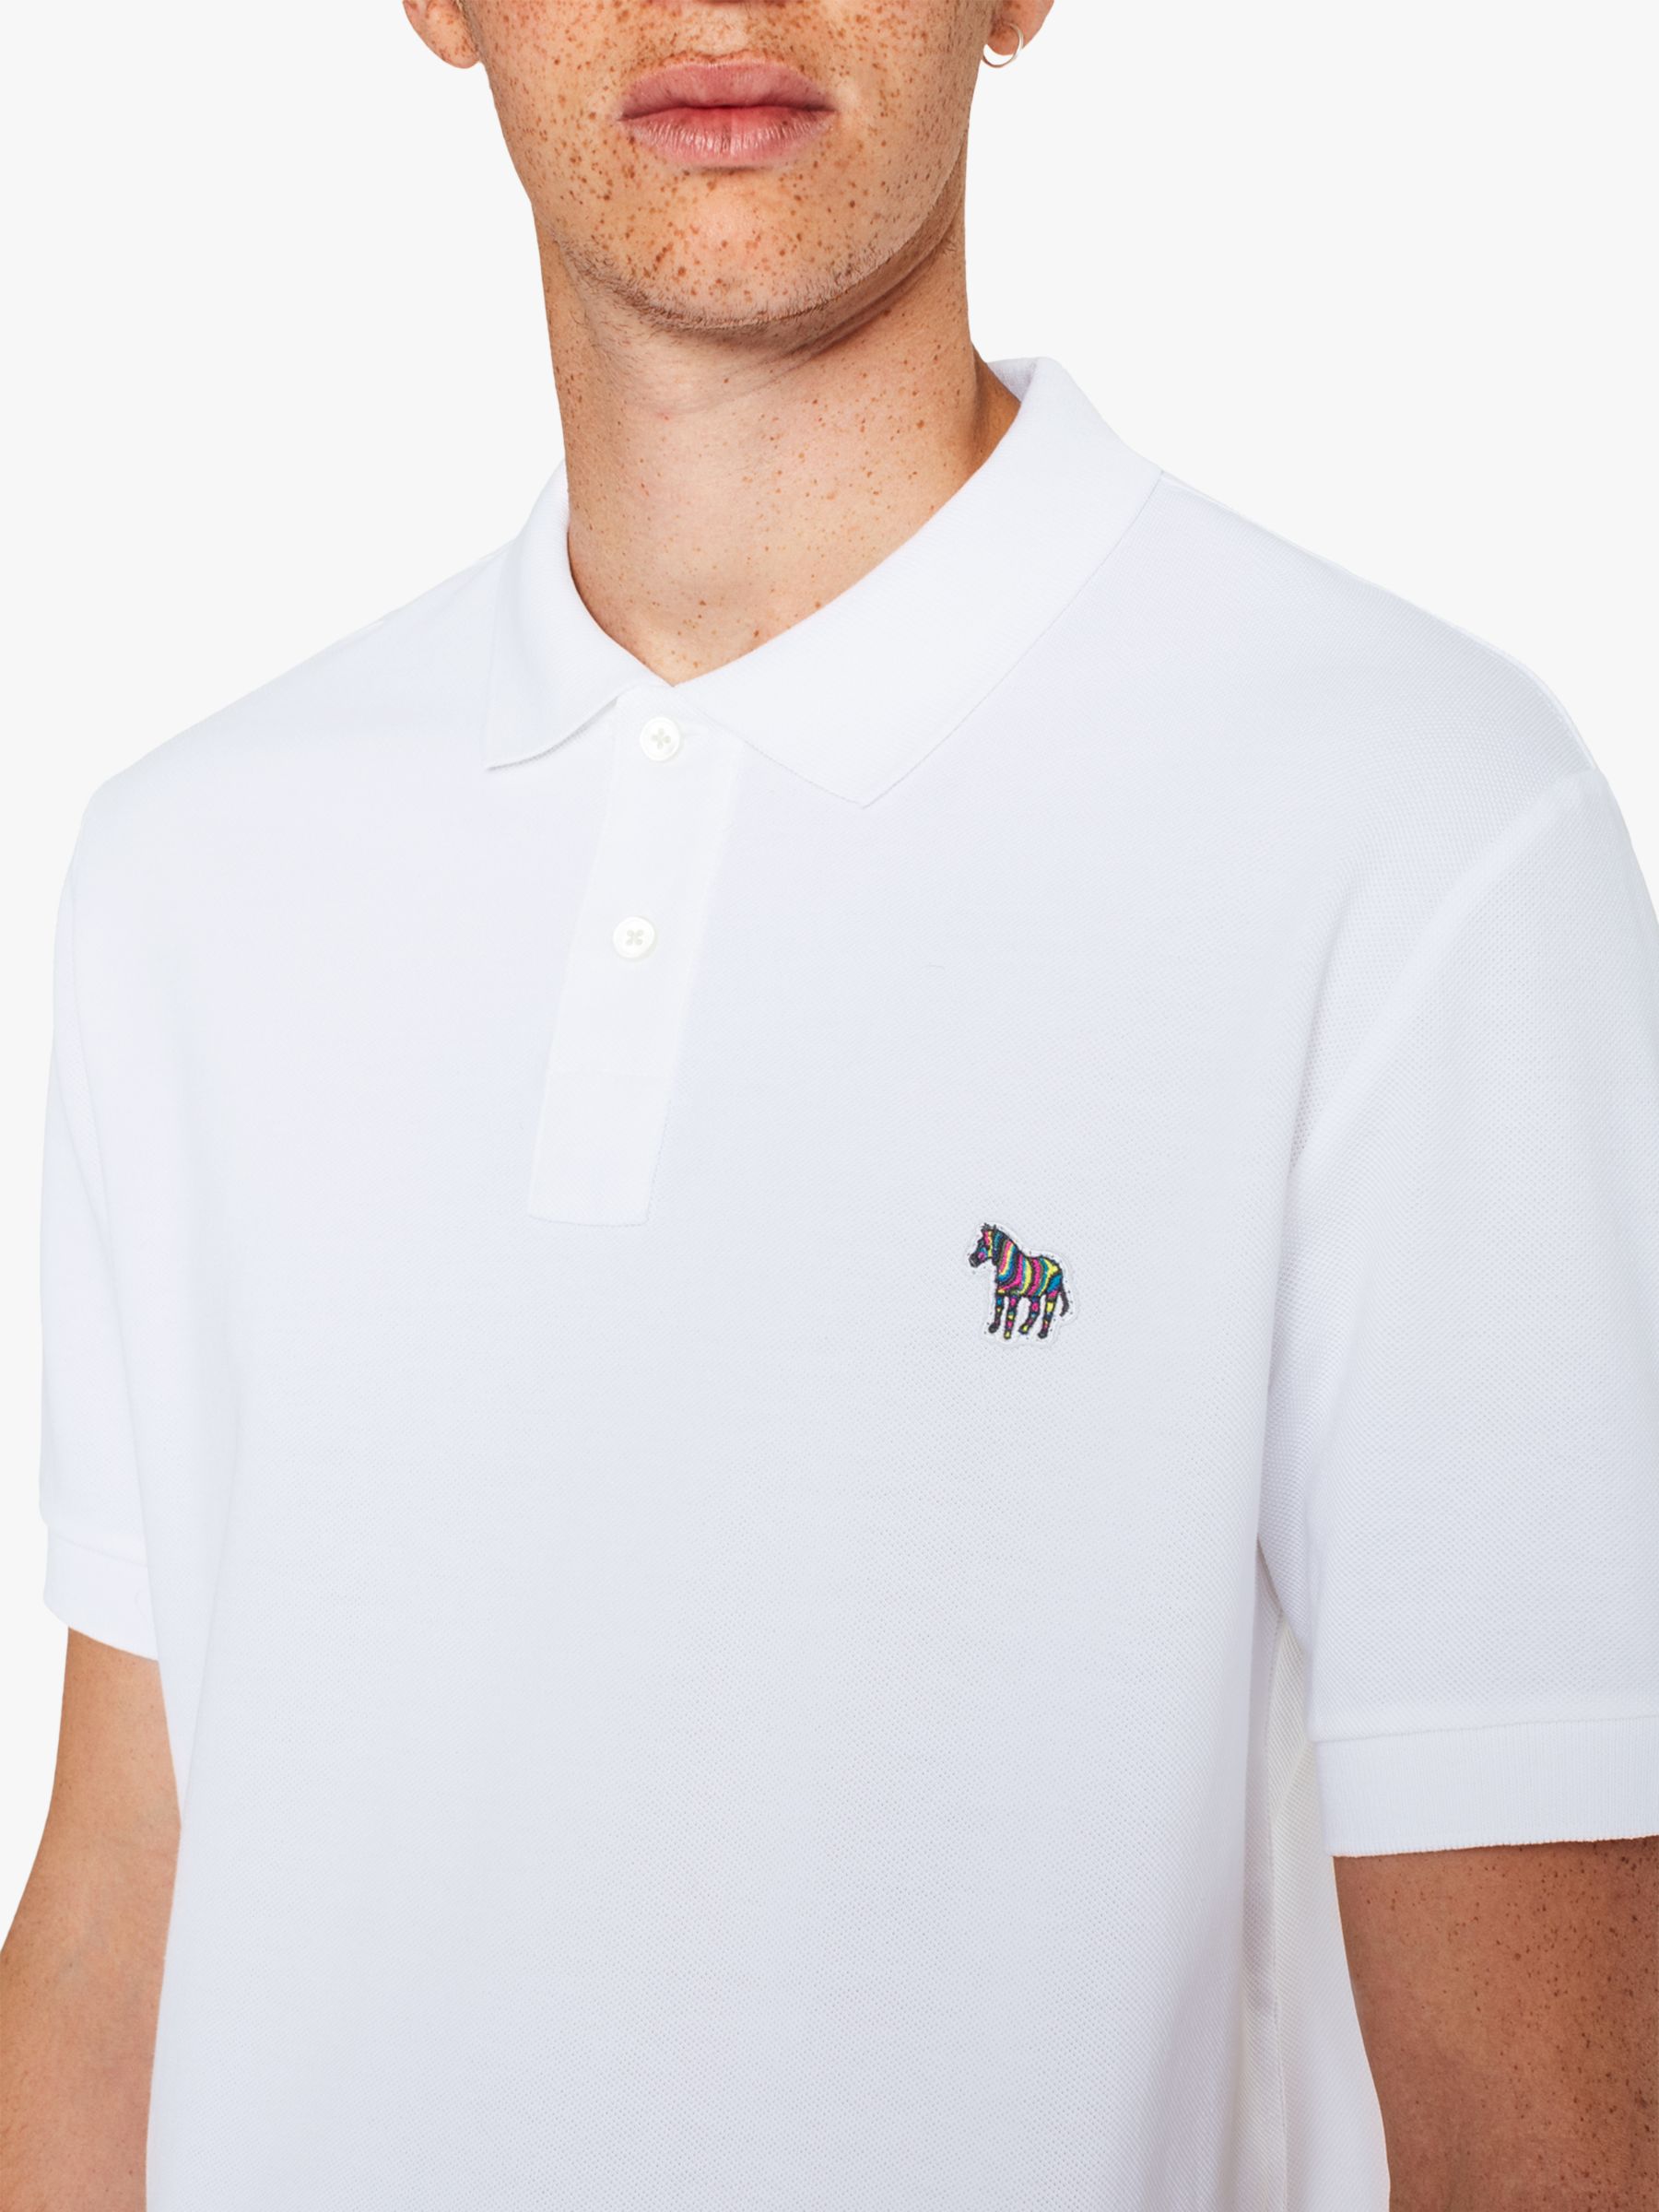 Paul Smith Zebra Applique Organic Cotton Polo Shirt, Whites, S